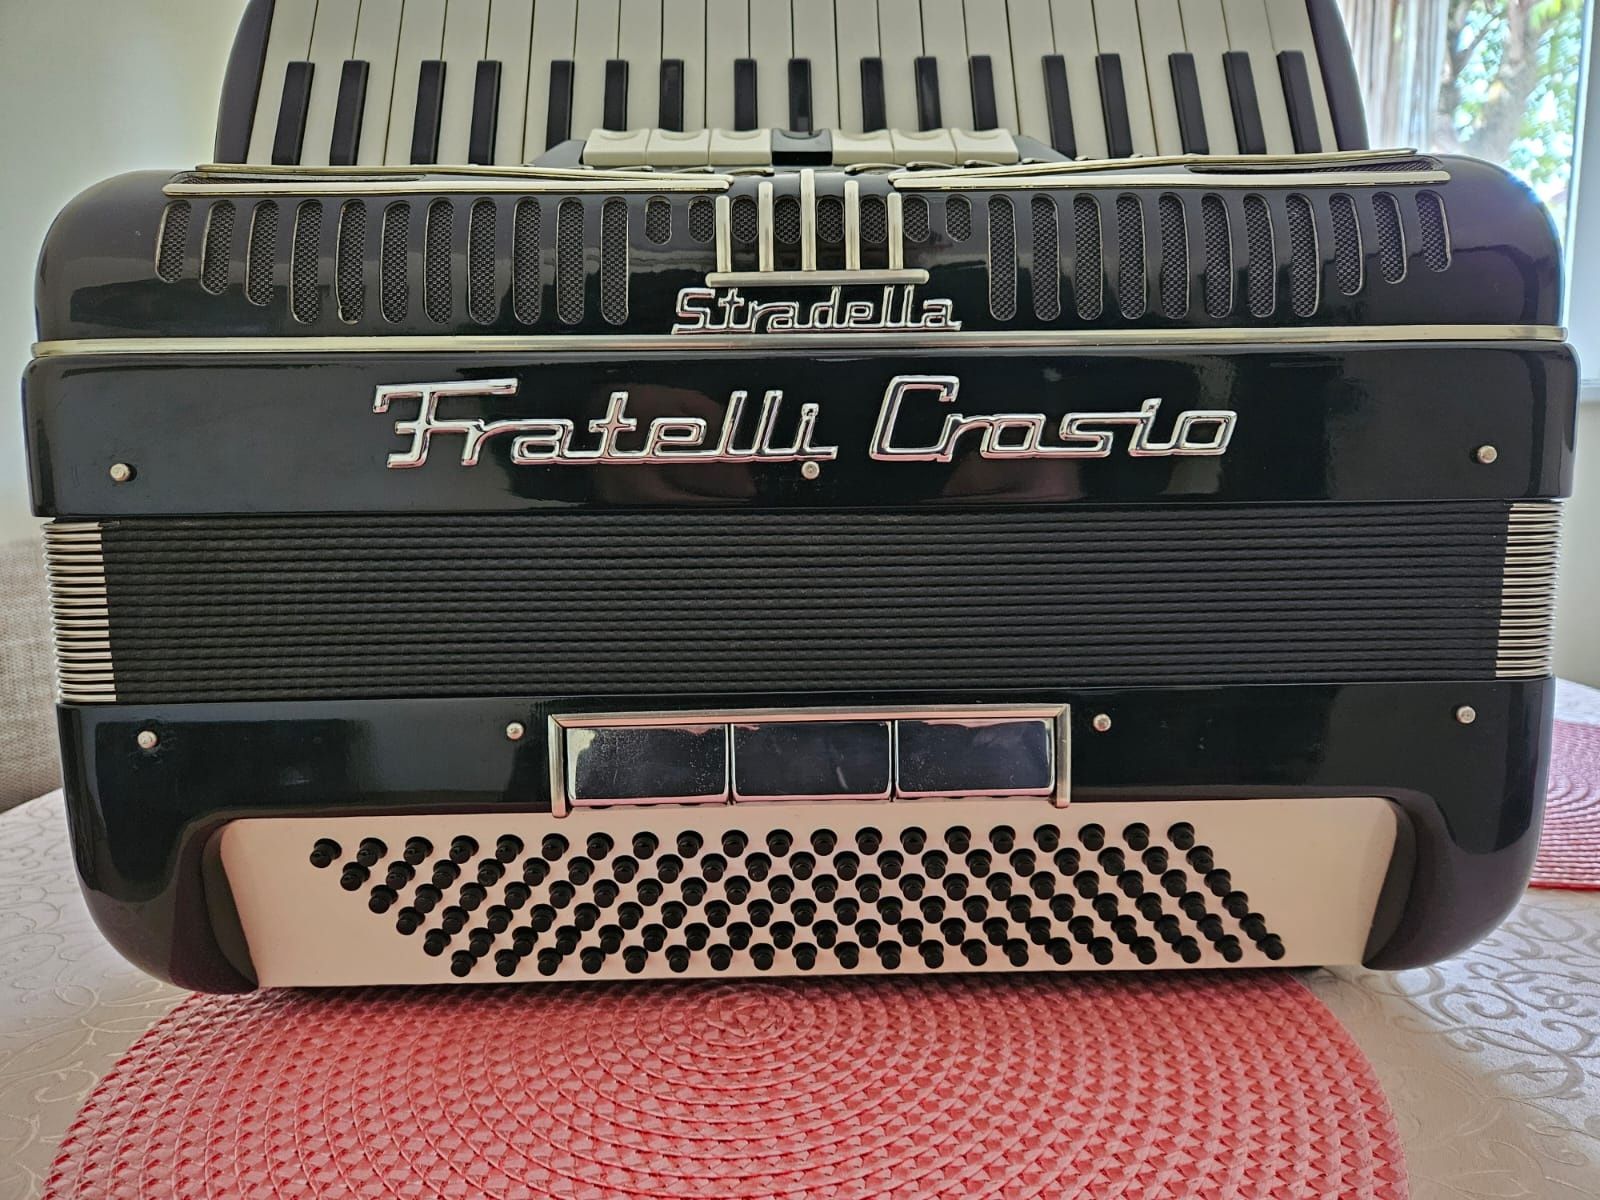 Vand acordeon Frateli Crosio 3-1 Cassoto